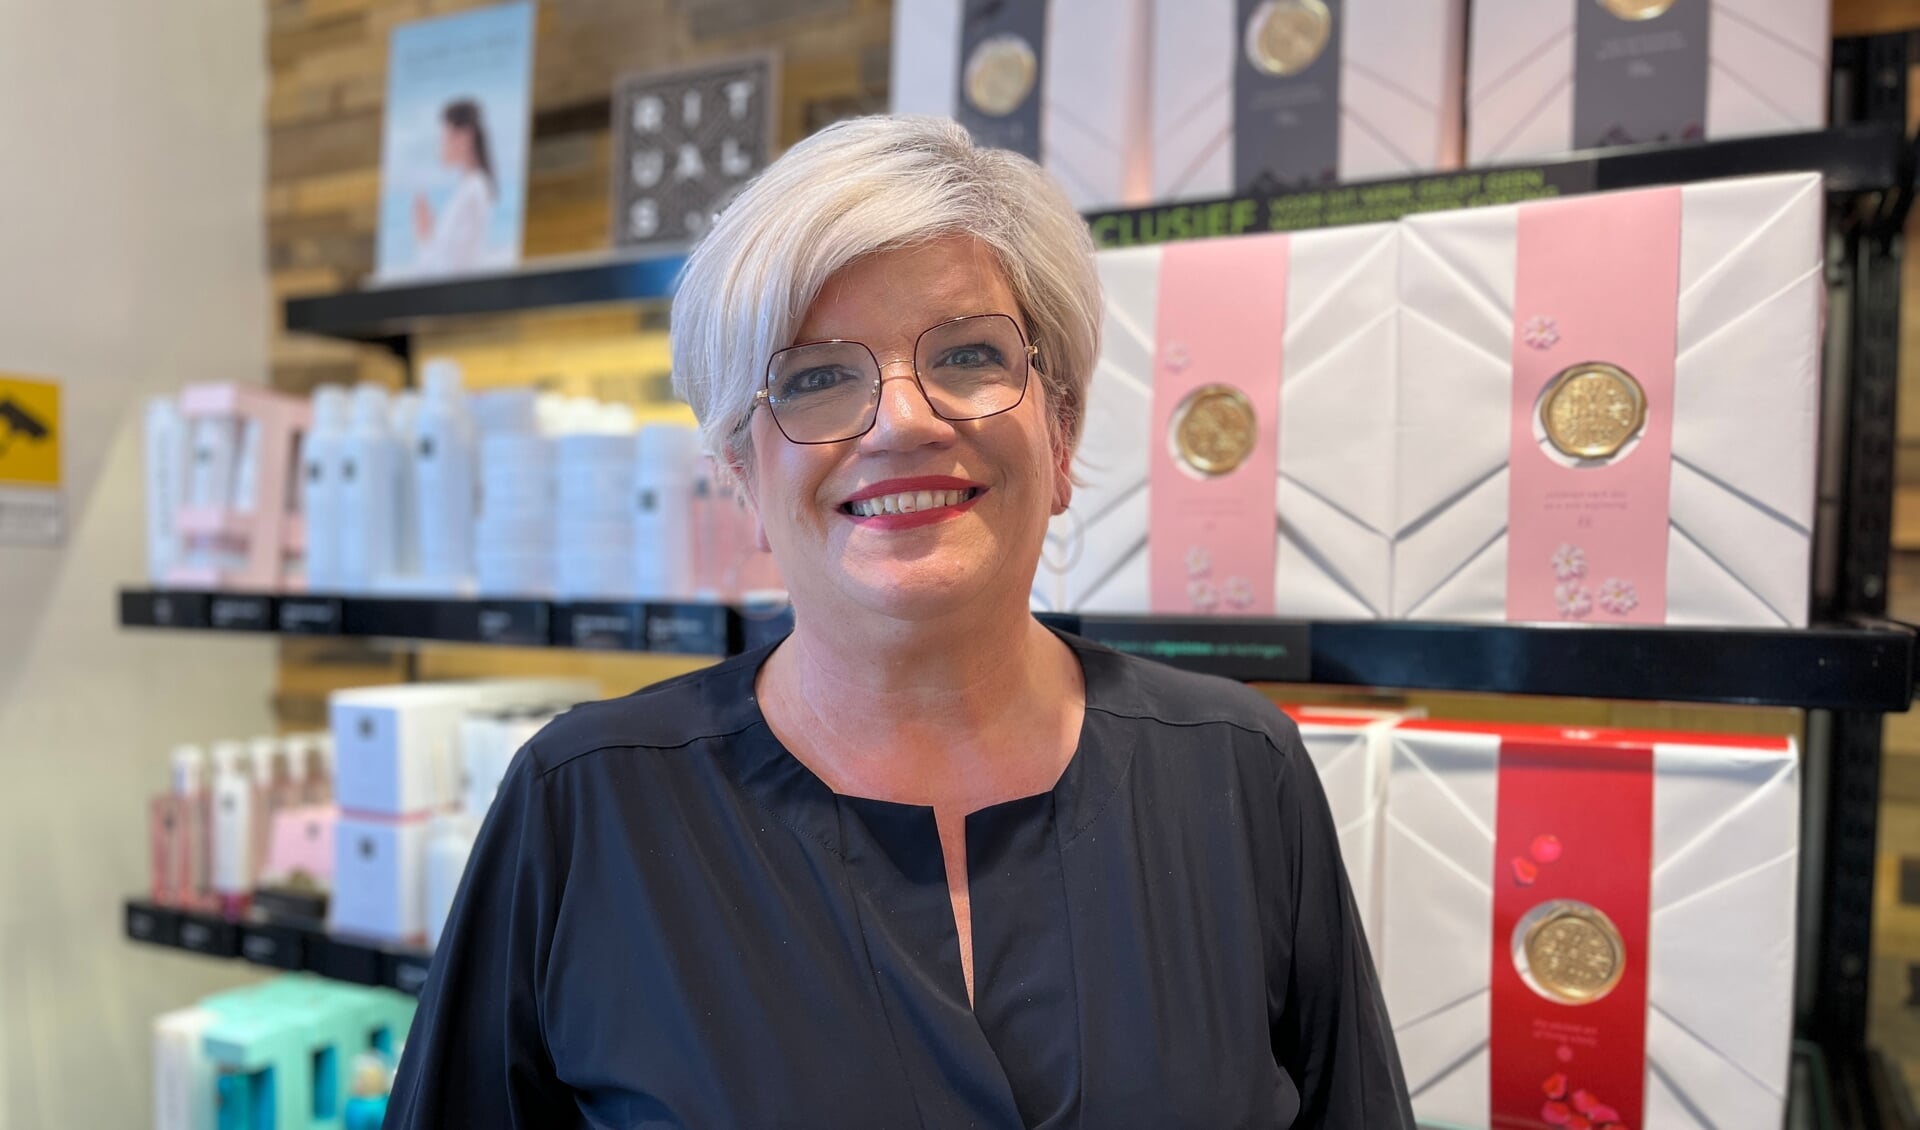 Wilma Vermeulen viert haar tienjarig jubileum met cadeautjes en acties voor de klanten.